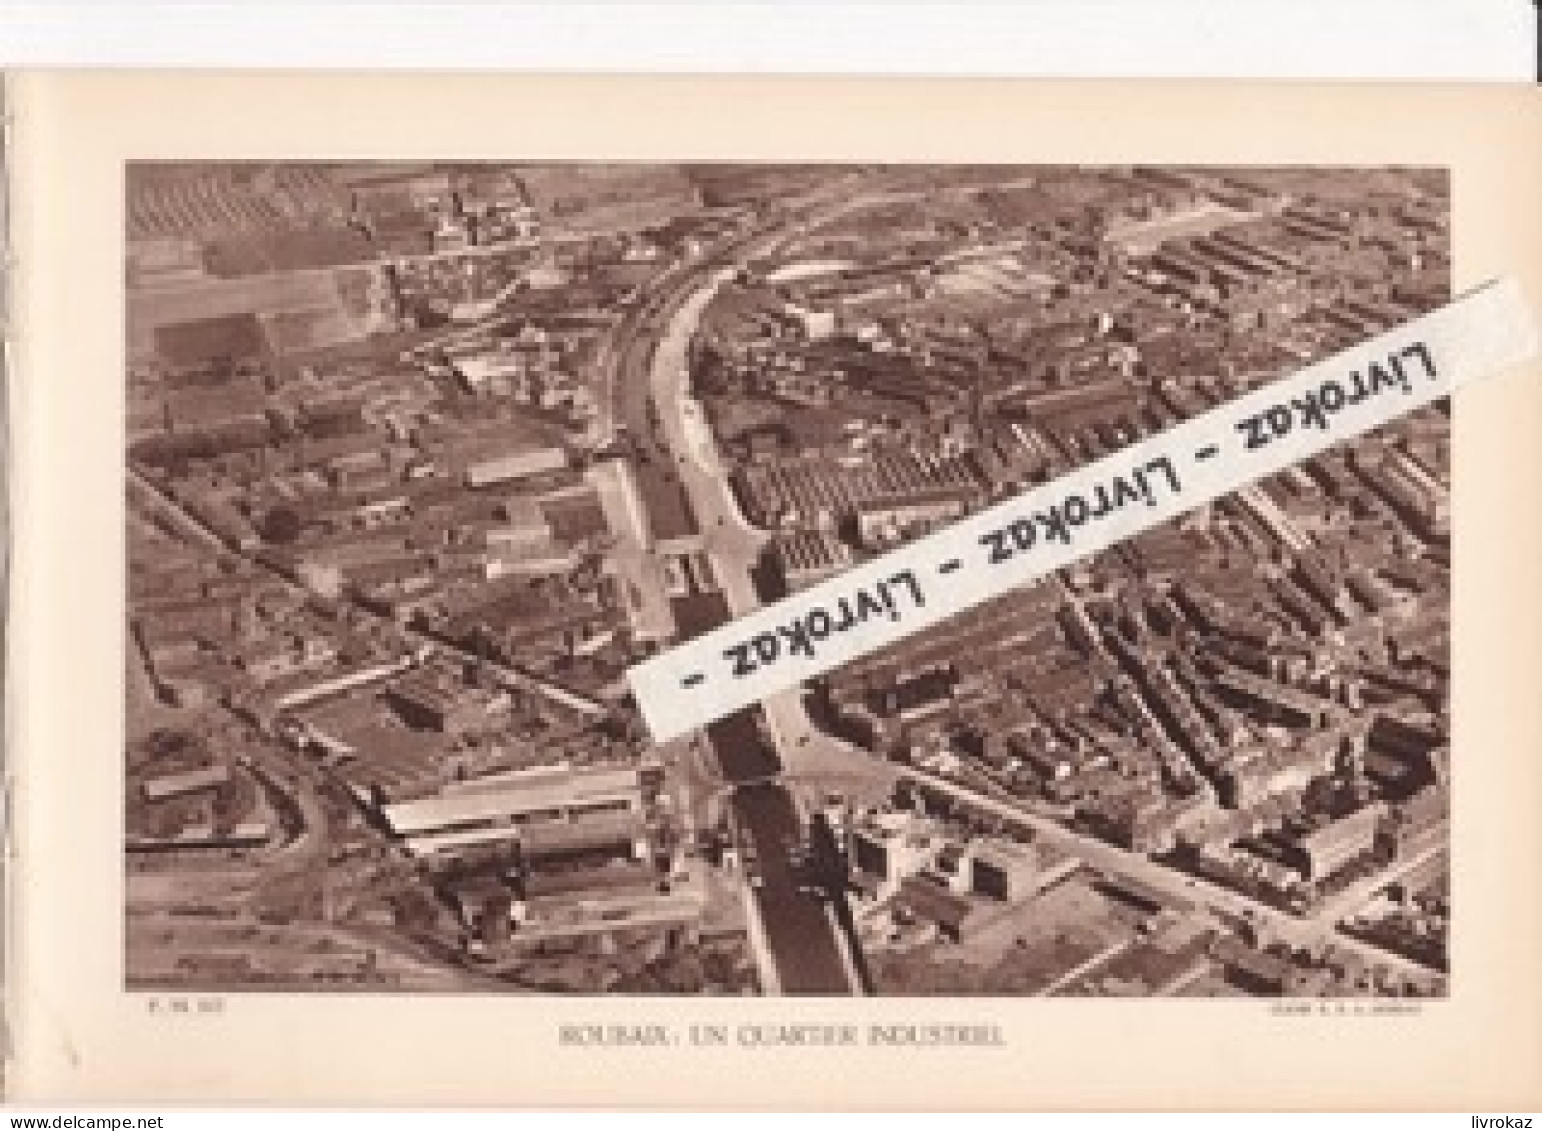 Roubaix (Nord) Un Quartier Industriel, Photo Sépia Extraite D'un Livre Paru En 1933, Usines Textiles, Briqueterie, Canal - Non Classés